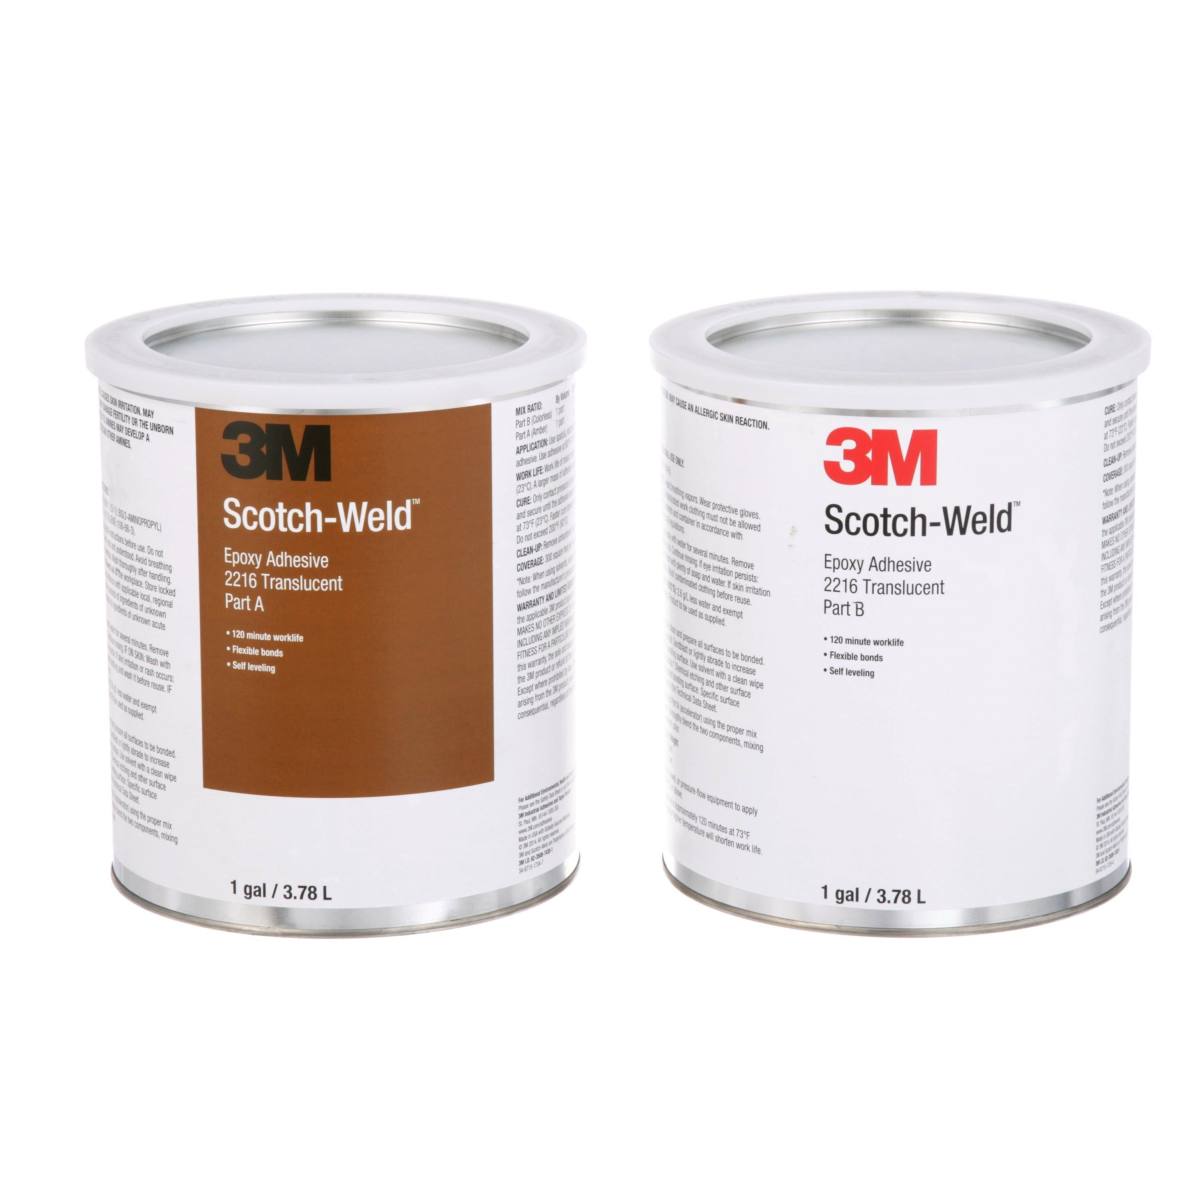 3M Scotch-Weld Adhesivo de construcción de 2 componentes a base de resina epoxi 2216 B/A, gris, 1,6 l